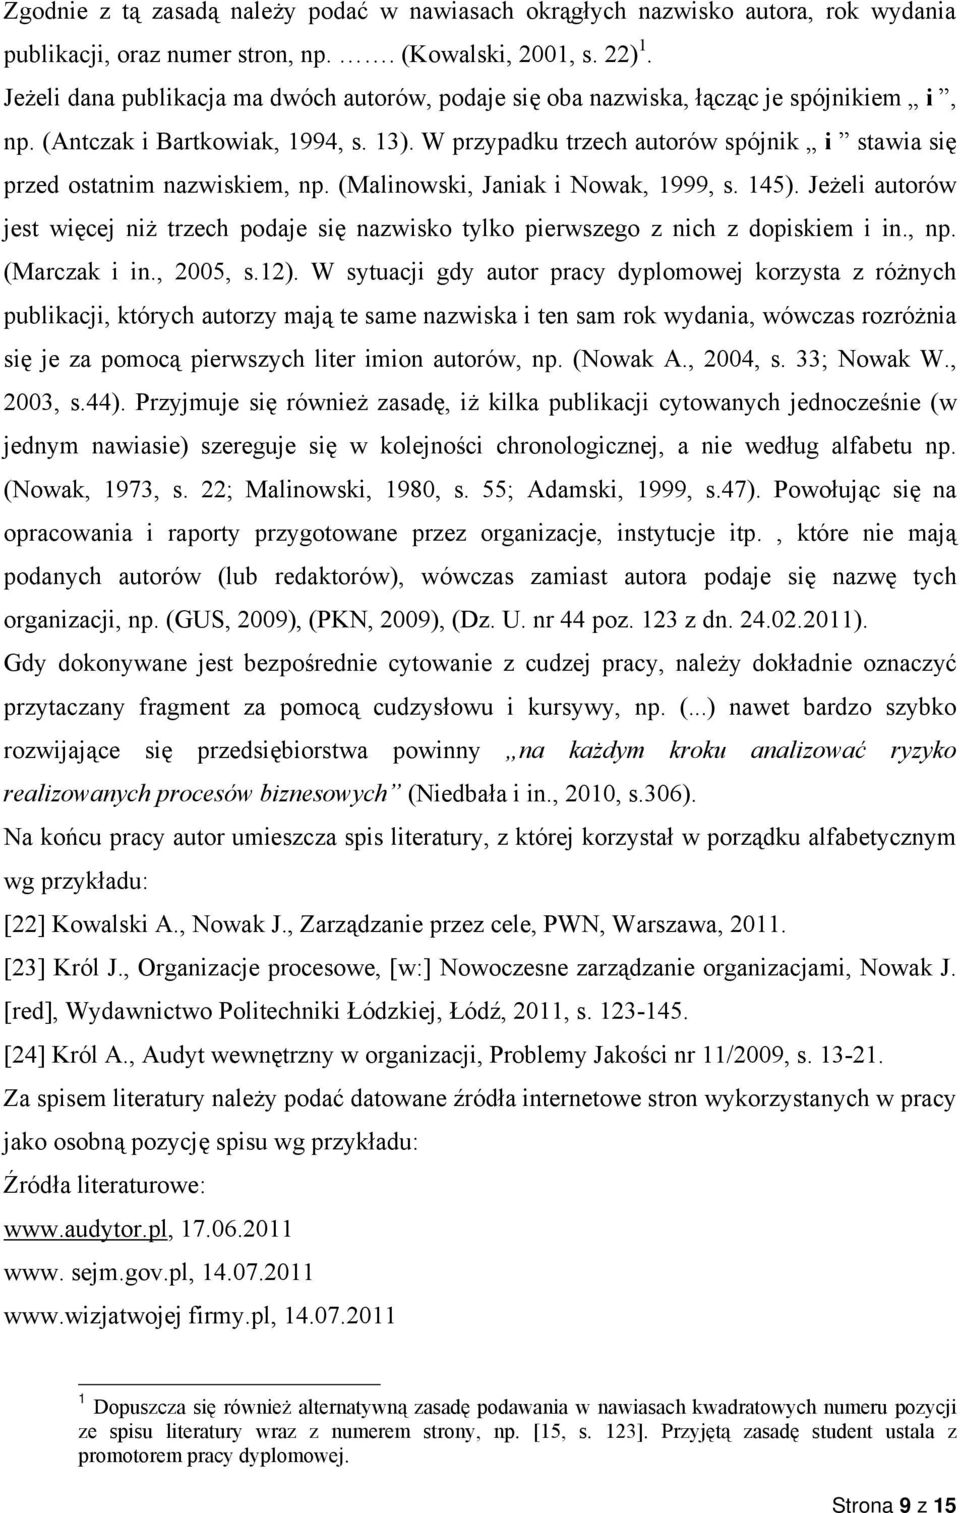 W przypadku trzech autorów spójnik i stawia się przed ostatnim nazwiskiem, np. (Malinowski, Janiak i Nowak, 1999, s. 145).